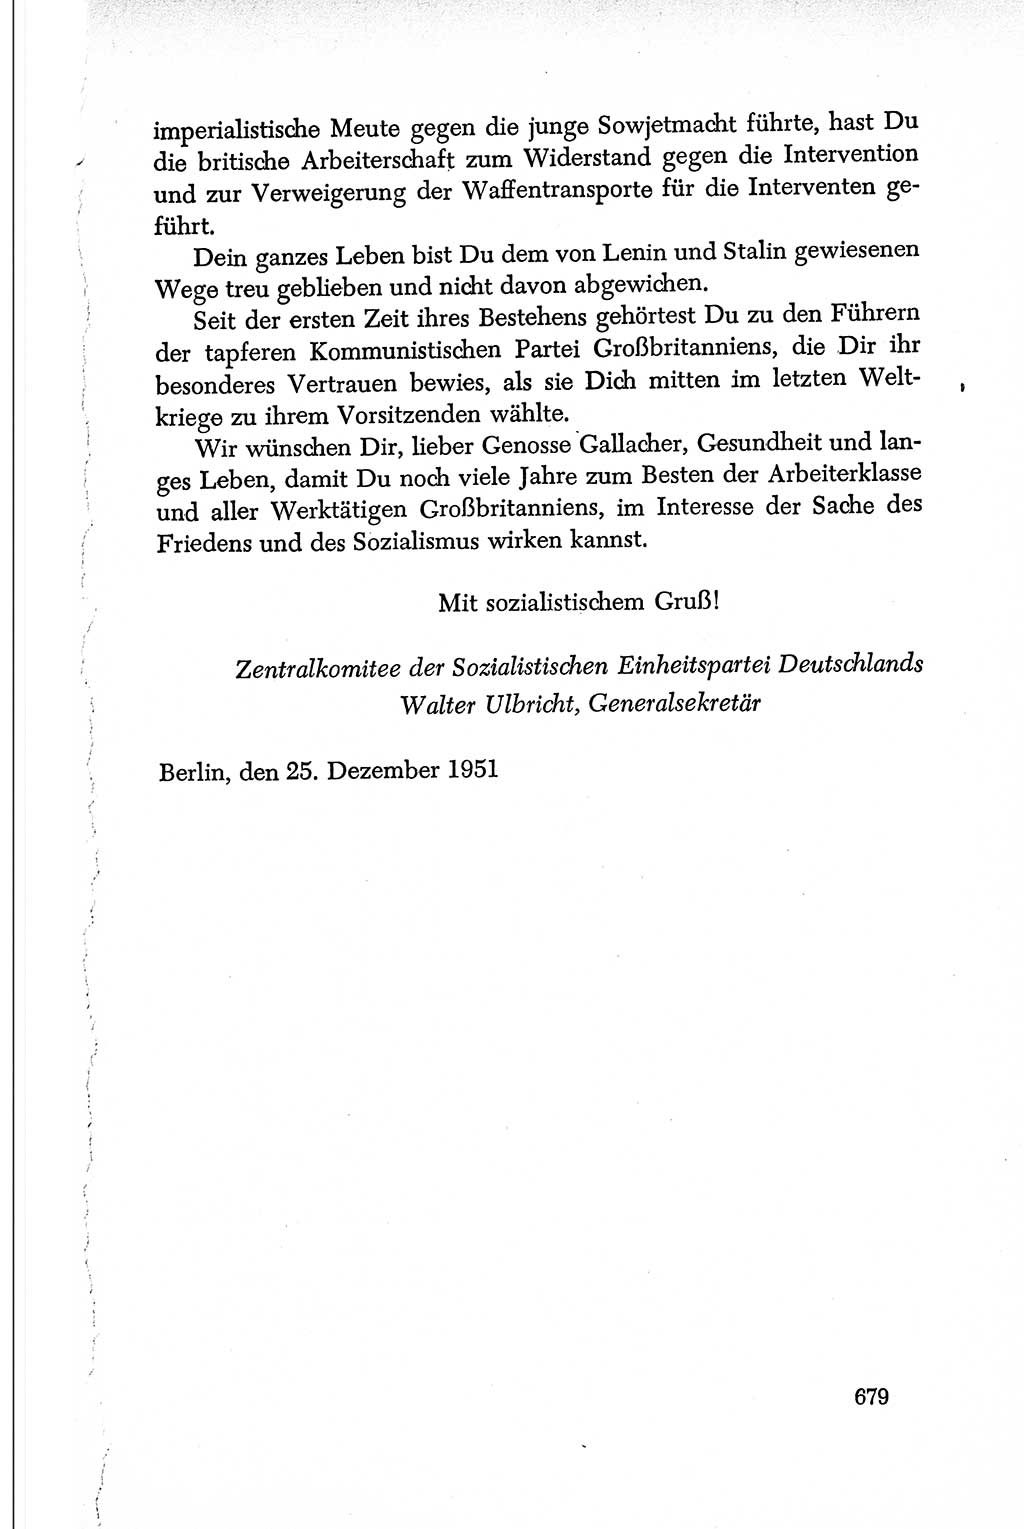 Dokumente der Sozialistischen Einheitspartei Deutschlands (SED) [Deutsche Demokratische Republik (DDR)] 1950-1952, Seite 679 (Dok. SED DDR 1950-1952, S. 679)